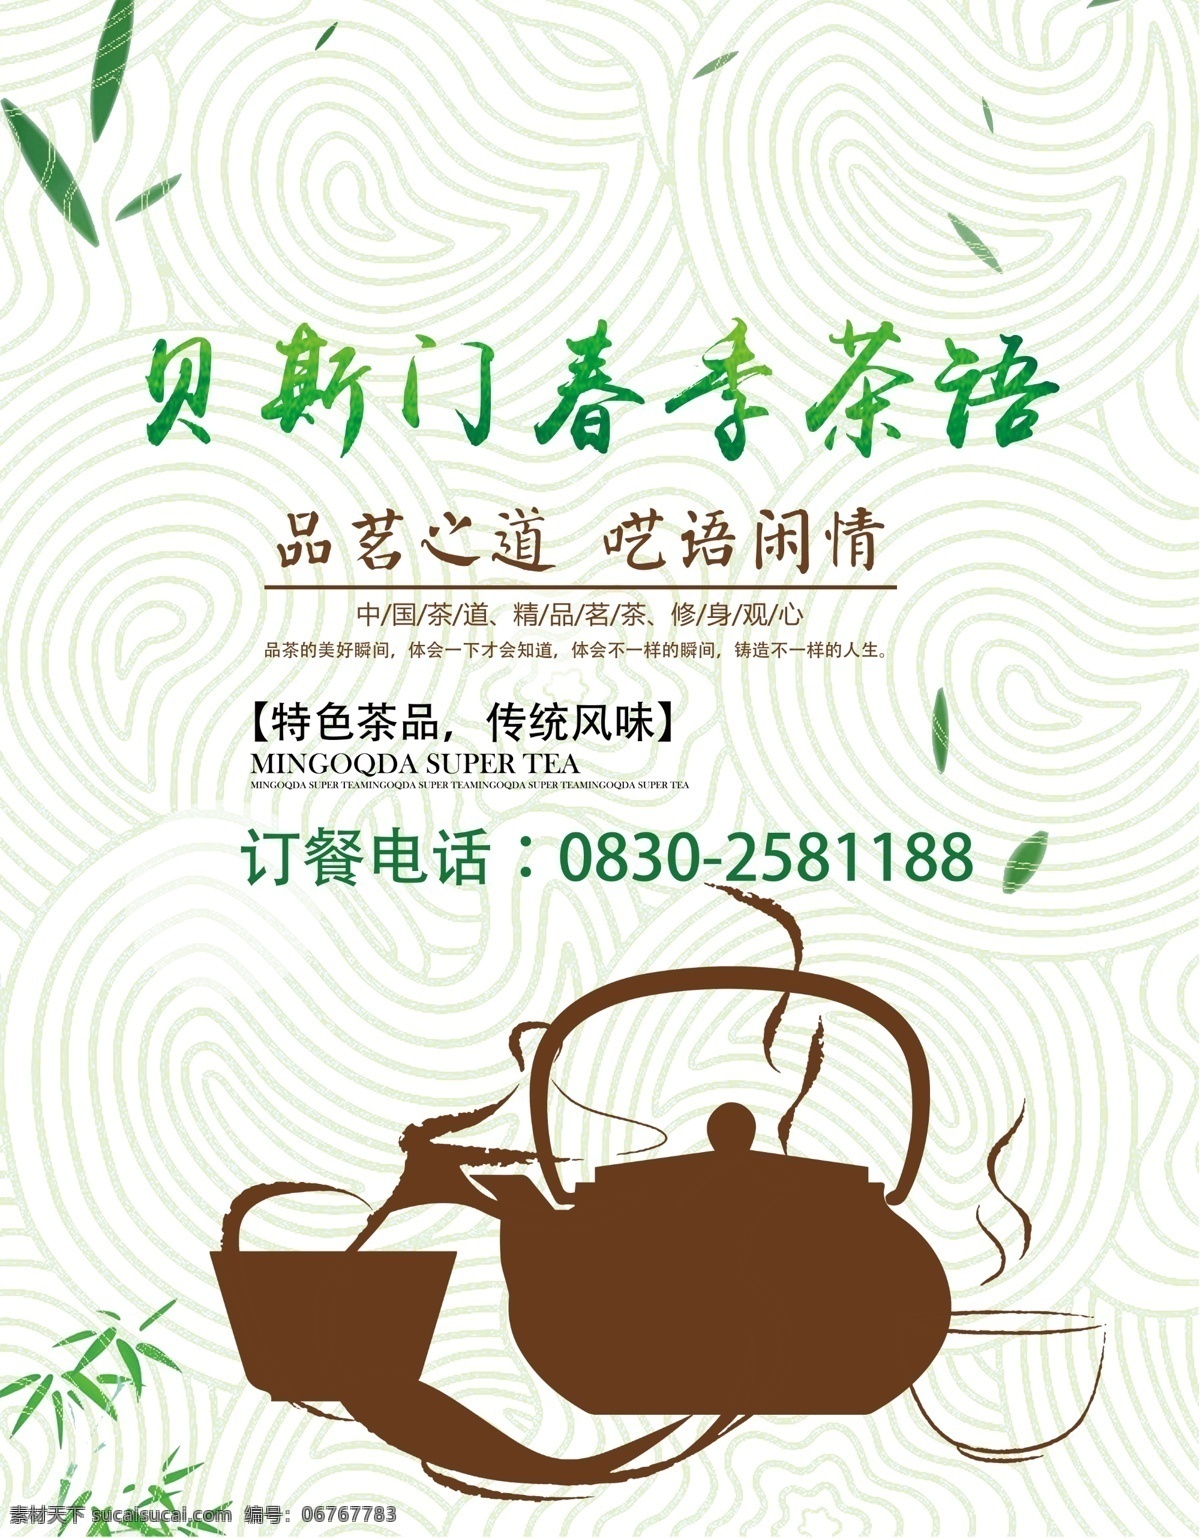 茶品宣传资料 茶 品 宣 传 资 料 各类宣传海报 室内广告设计